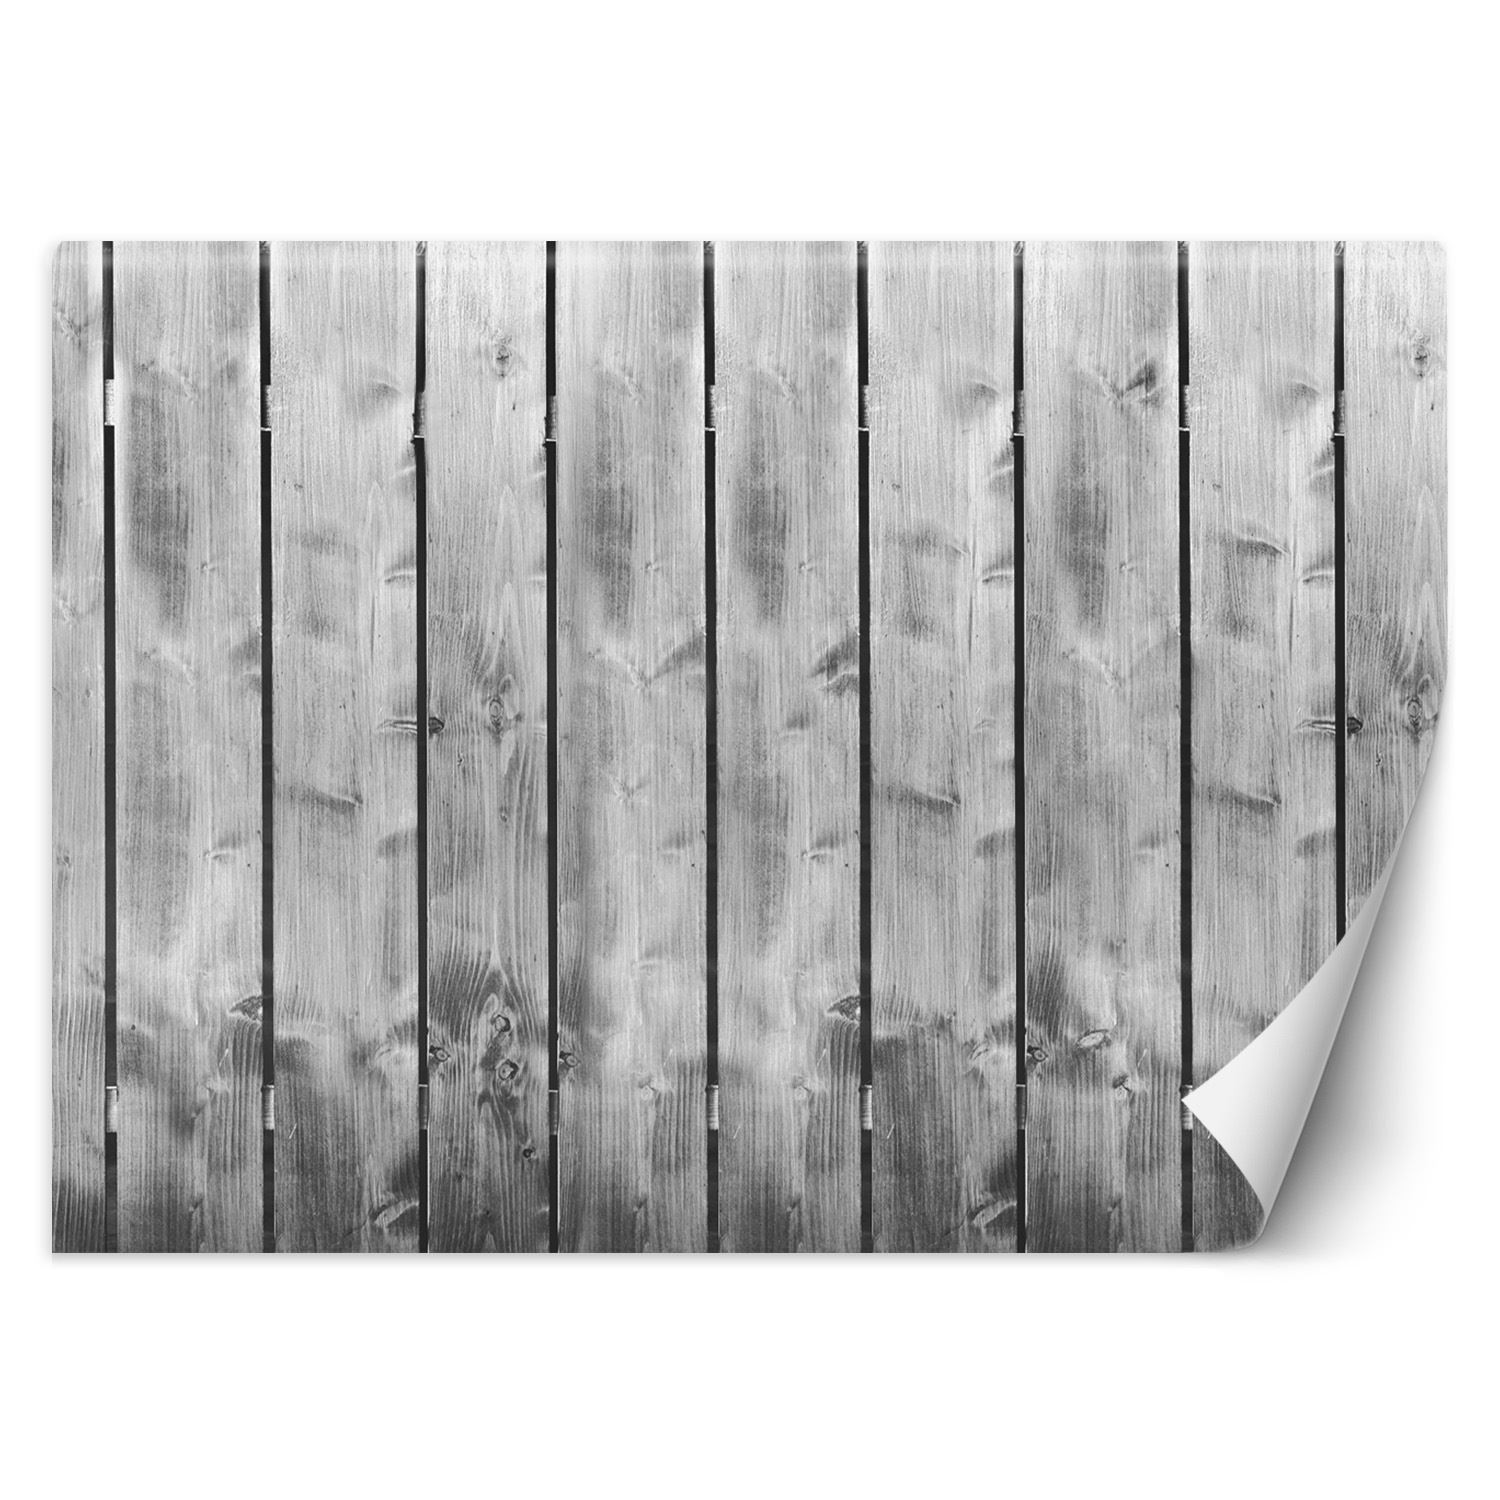 Trend24 – Behang – Plankpatroon – Behangpapier – Behang Woonkamer – Fotobehang – 400x280x2 cm – Incl. behanglijm